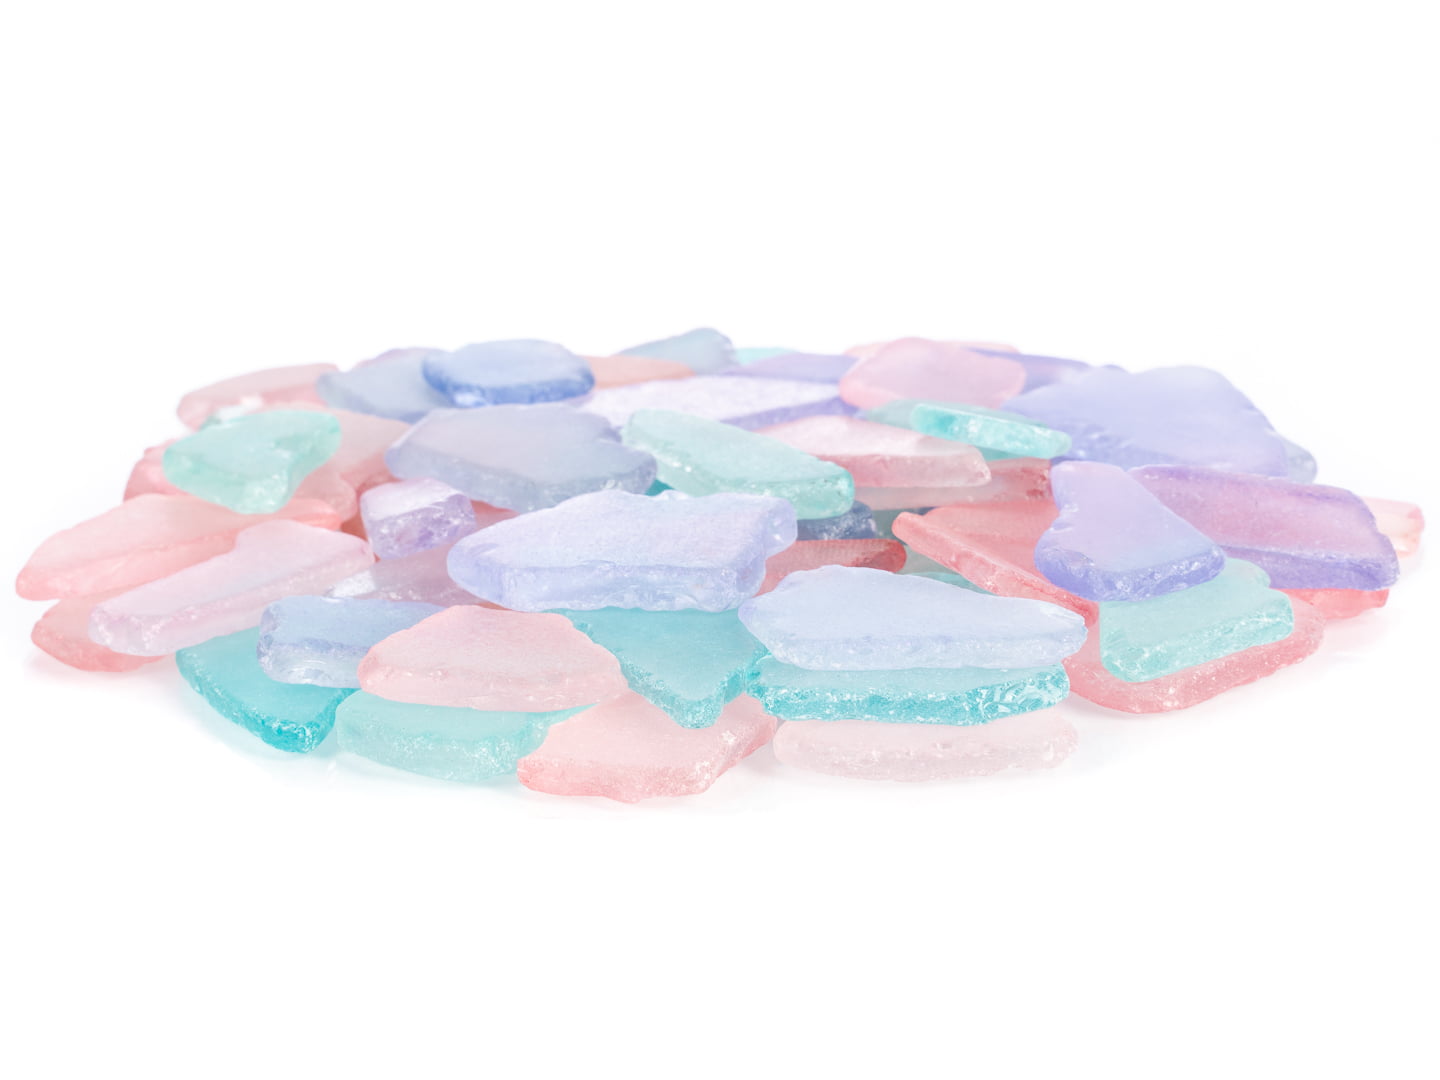 Sea Glass 11 Ounces Pink Lavender and Aqua Mix Sea Glass - Bulk Seaglass  Pieces for Beach Decor & Crafts